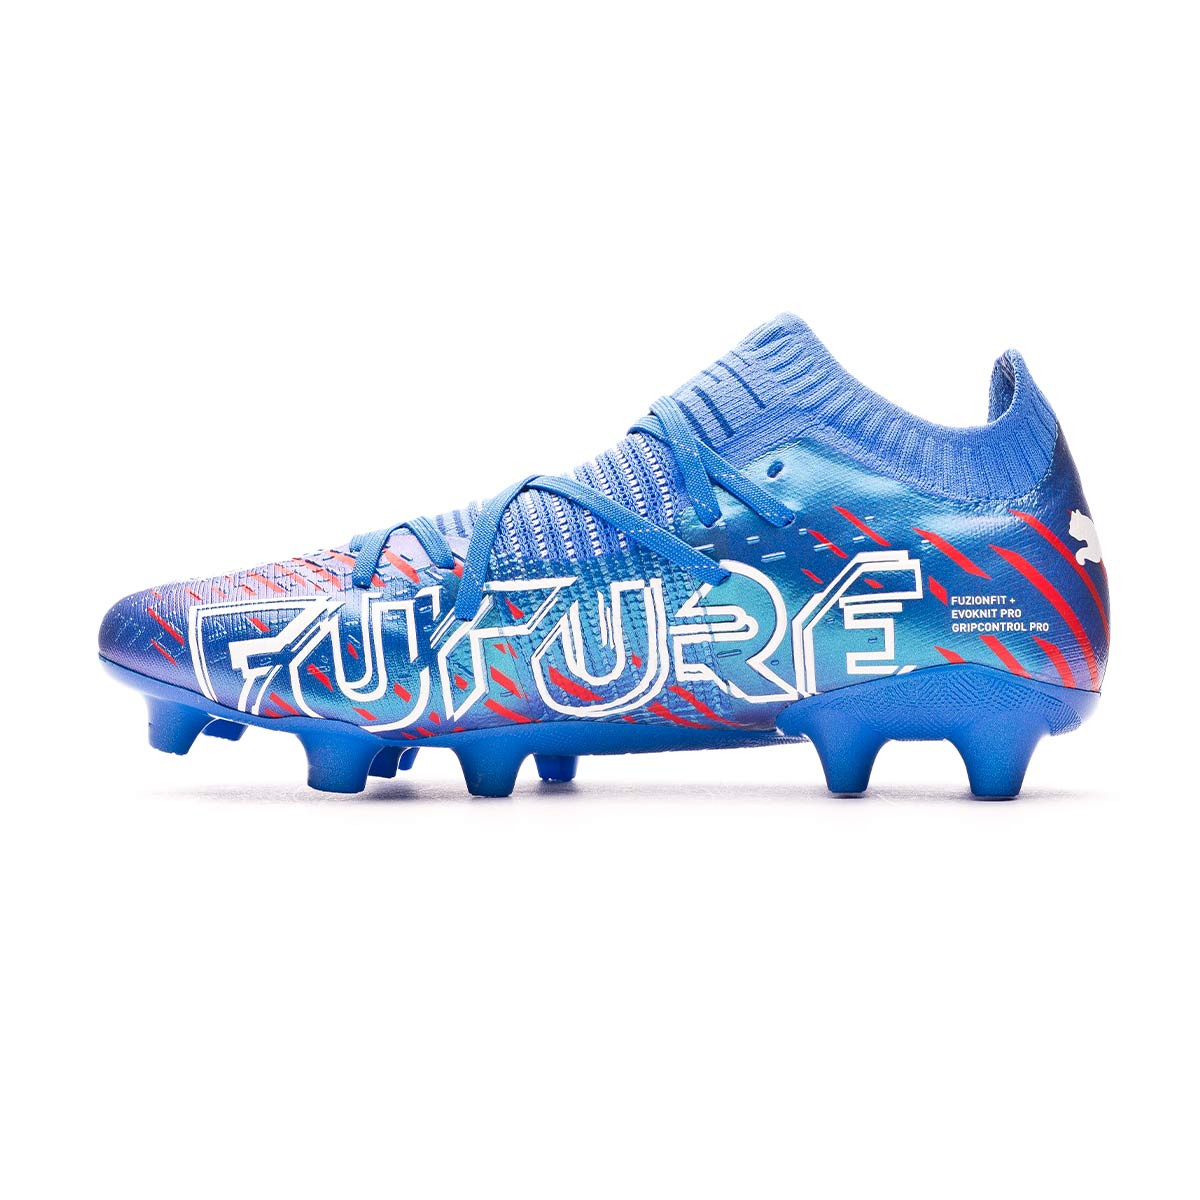 Puma Future Football Boots Cheapest Purchase 46 Off Irradia Com Es